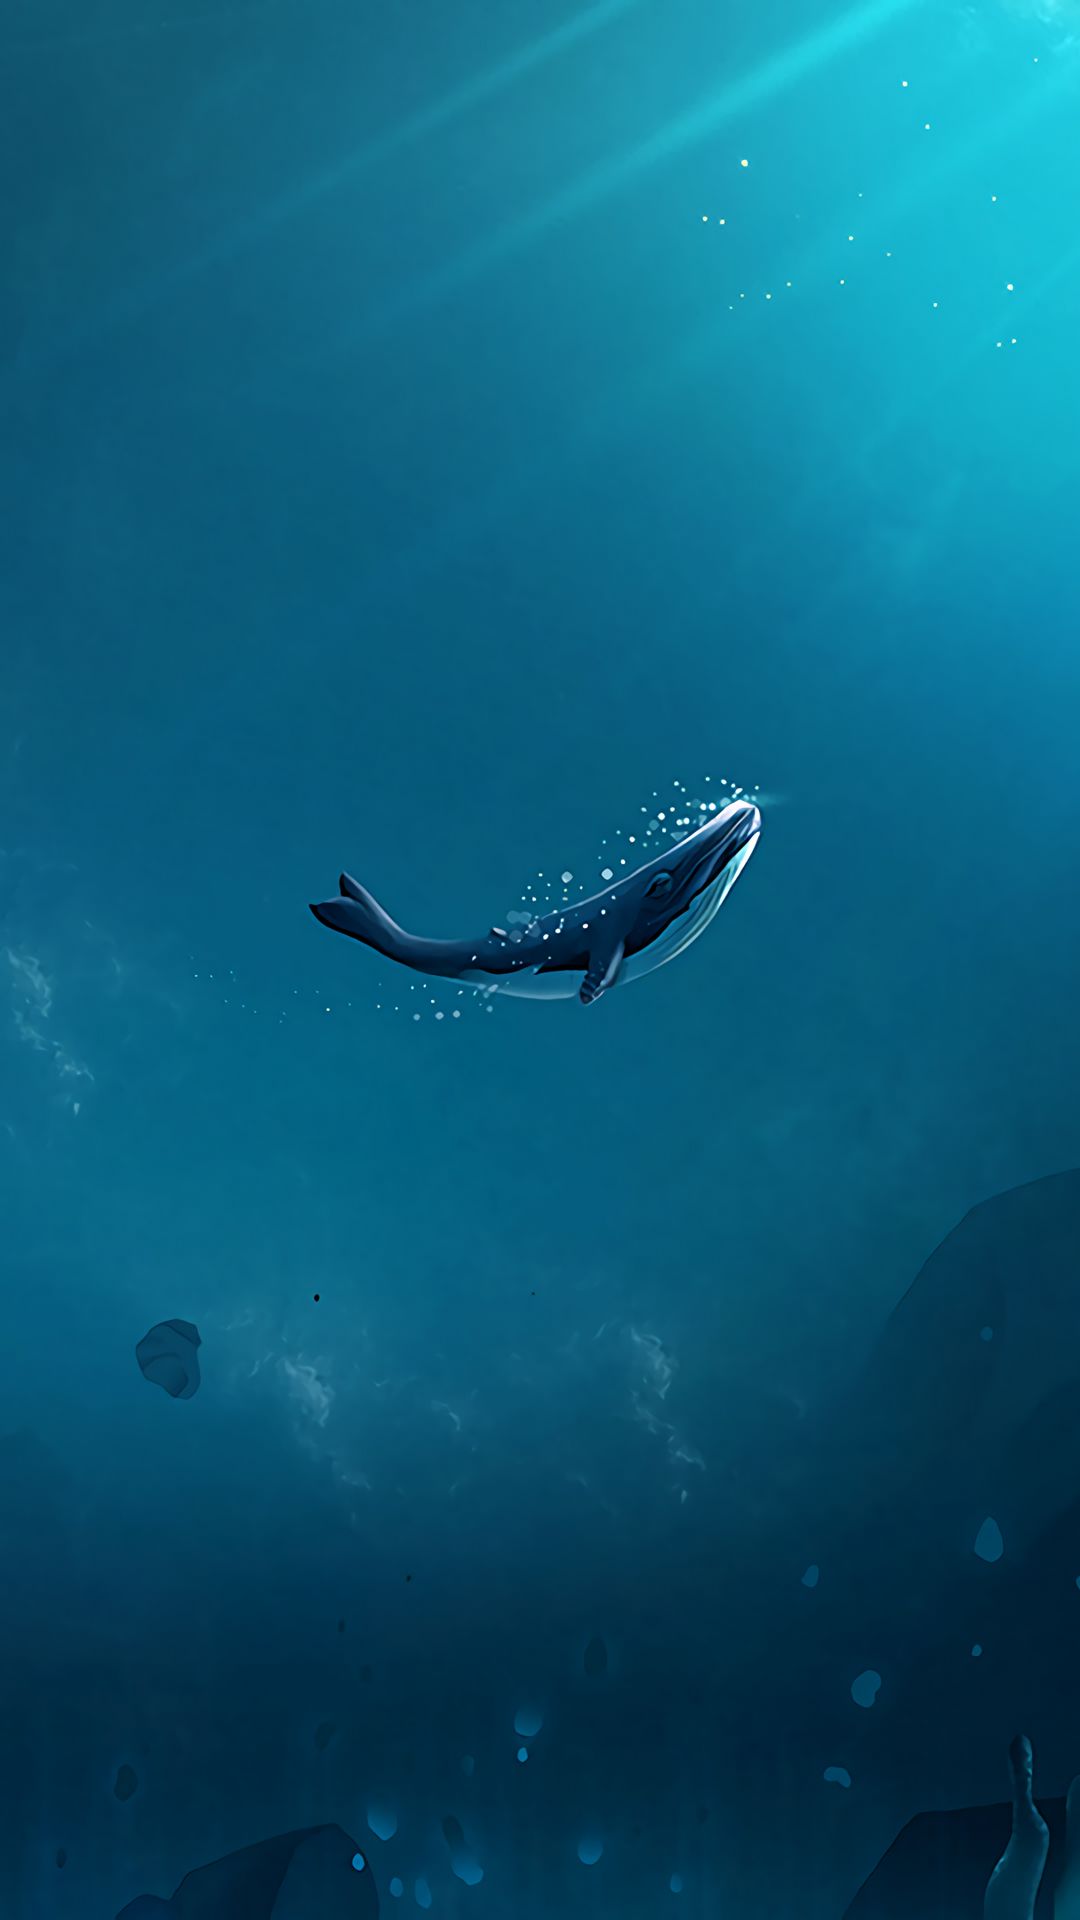 Thế giới đầy đủ những loài động vật biển đa dạng, tuyệt đẹp và kỳ diệu sẽ được khám phá trong bức ảnh này. Từ cá voi trắng đến rùa biển vàng, đầy những loài đang chờ đợi bạn khám phá. Hãy sẵn sàng để rời khỏi đại dương đời thường và bắt đầu hành trình của bạn đến thế giới đầy kì quan này.